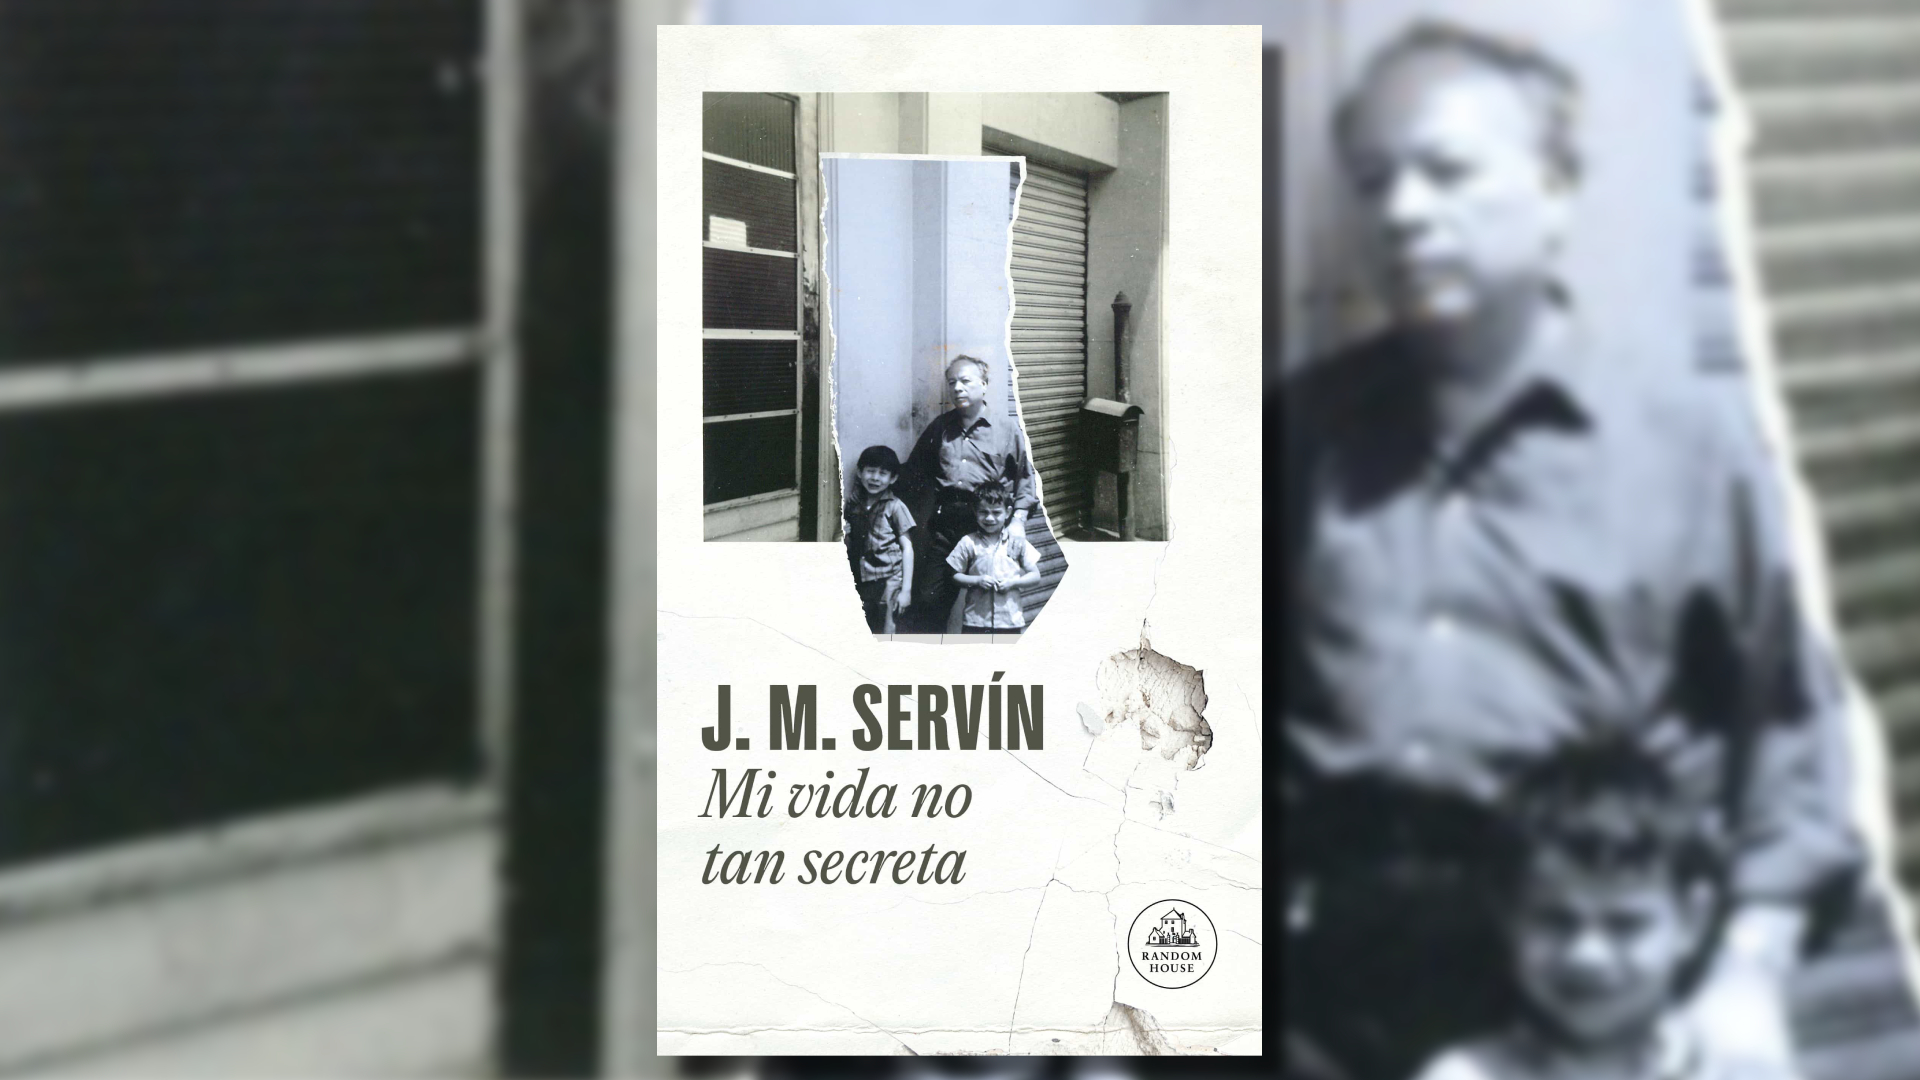 Portada de "Mi vida no tan secreta", escrita por J.M. Servín y editada bajo el sello editorial Penguin Random House